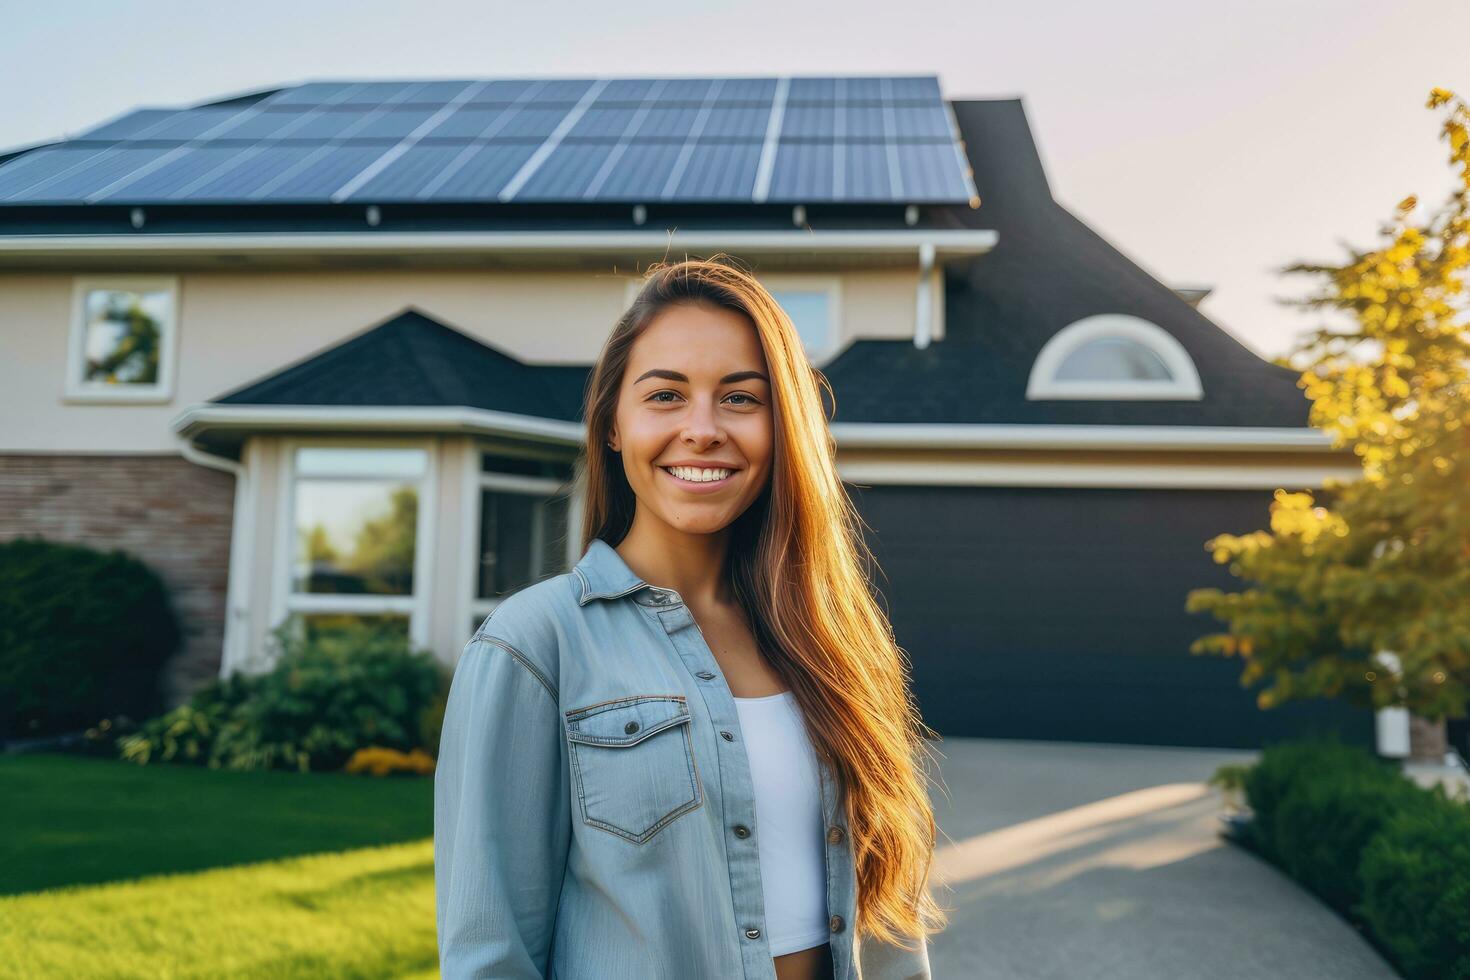 feliz jovem mulher carrinhos sorridente do uma casa com solar painéis instalado, gerador ai. foto